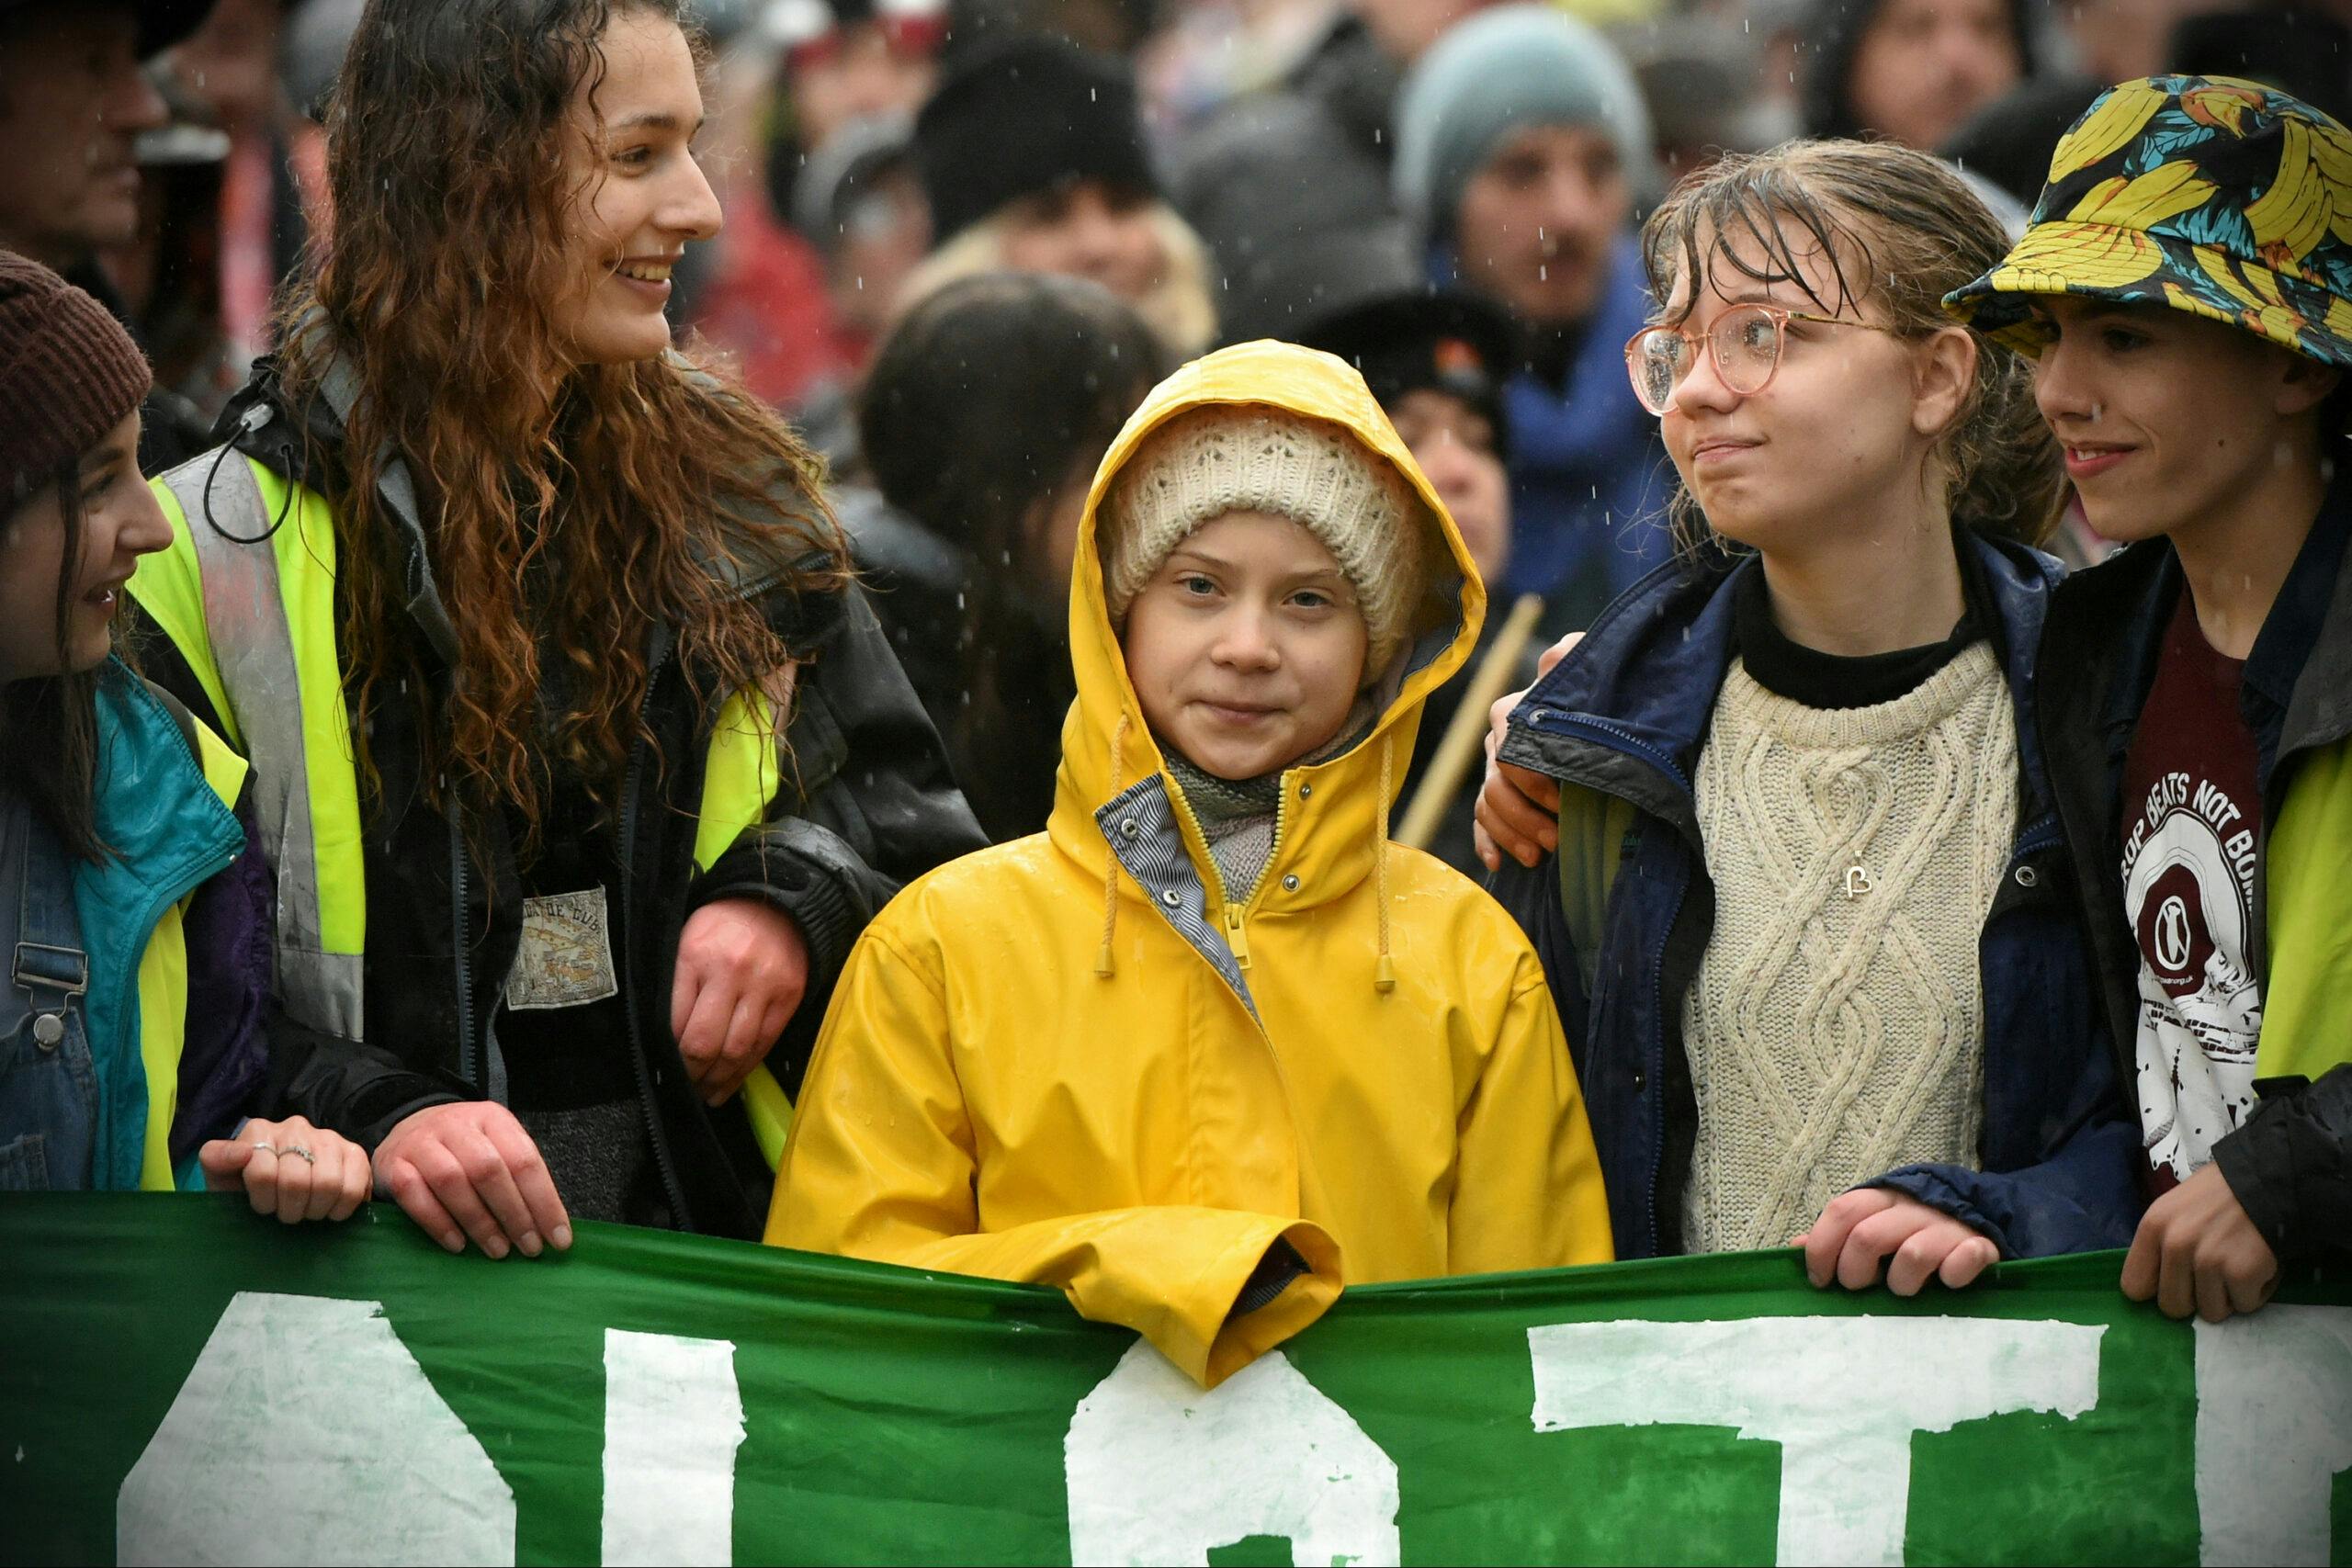 تصویری از گرتا تونبرگ در تظاهرات بریستول در سال ۲۰۲۰